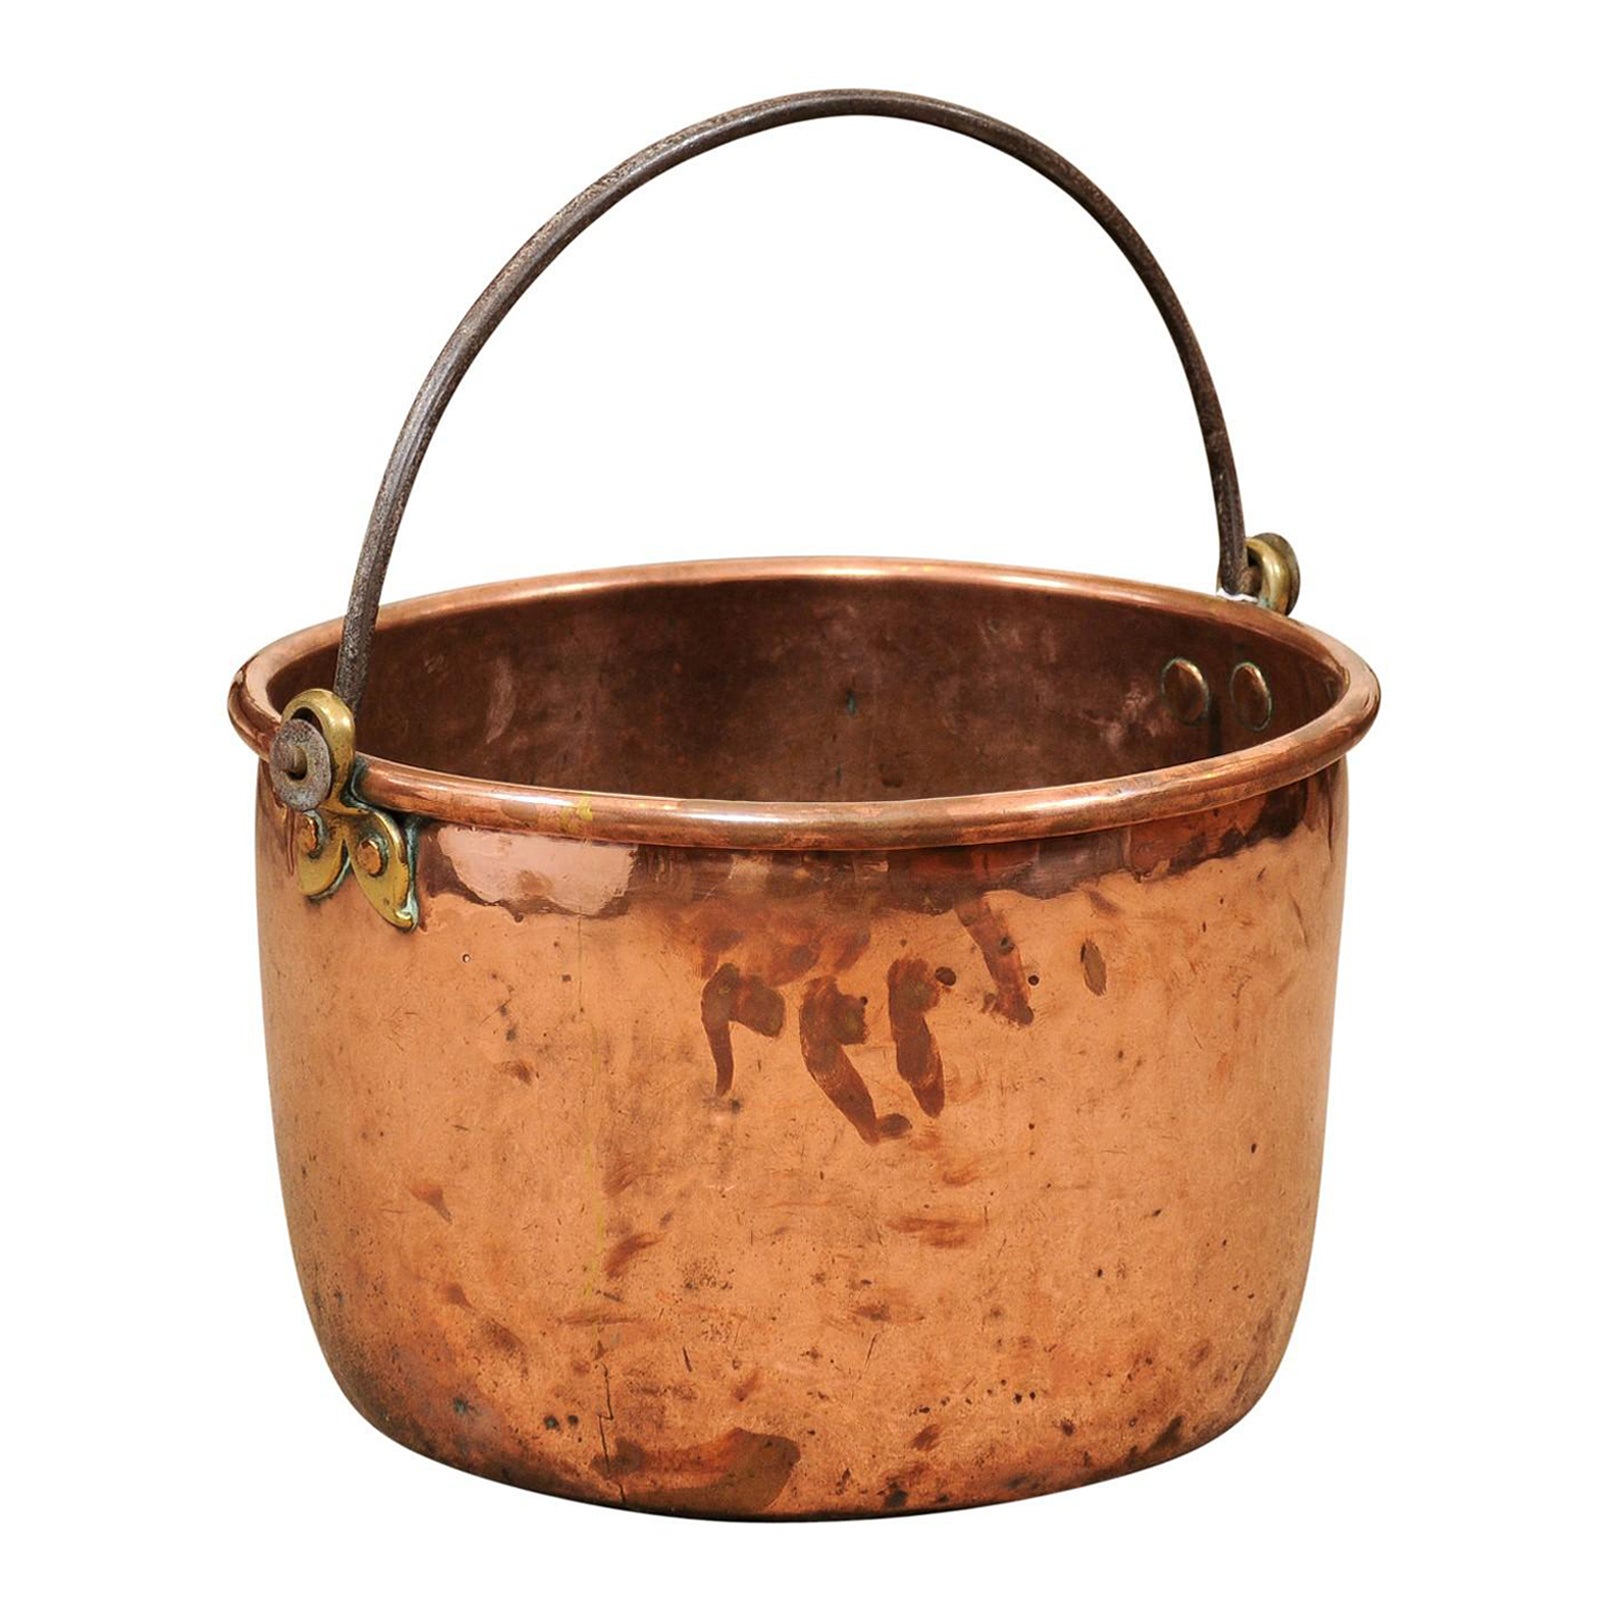  Grand pot en cuivre du 18ème siècle avec poignée en fer forgé en vente